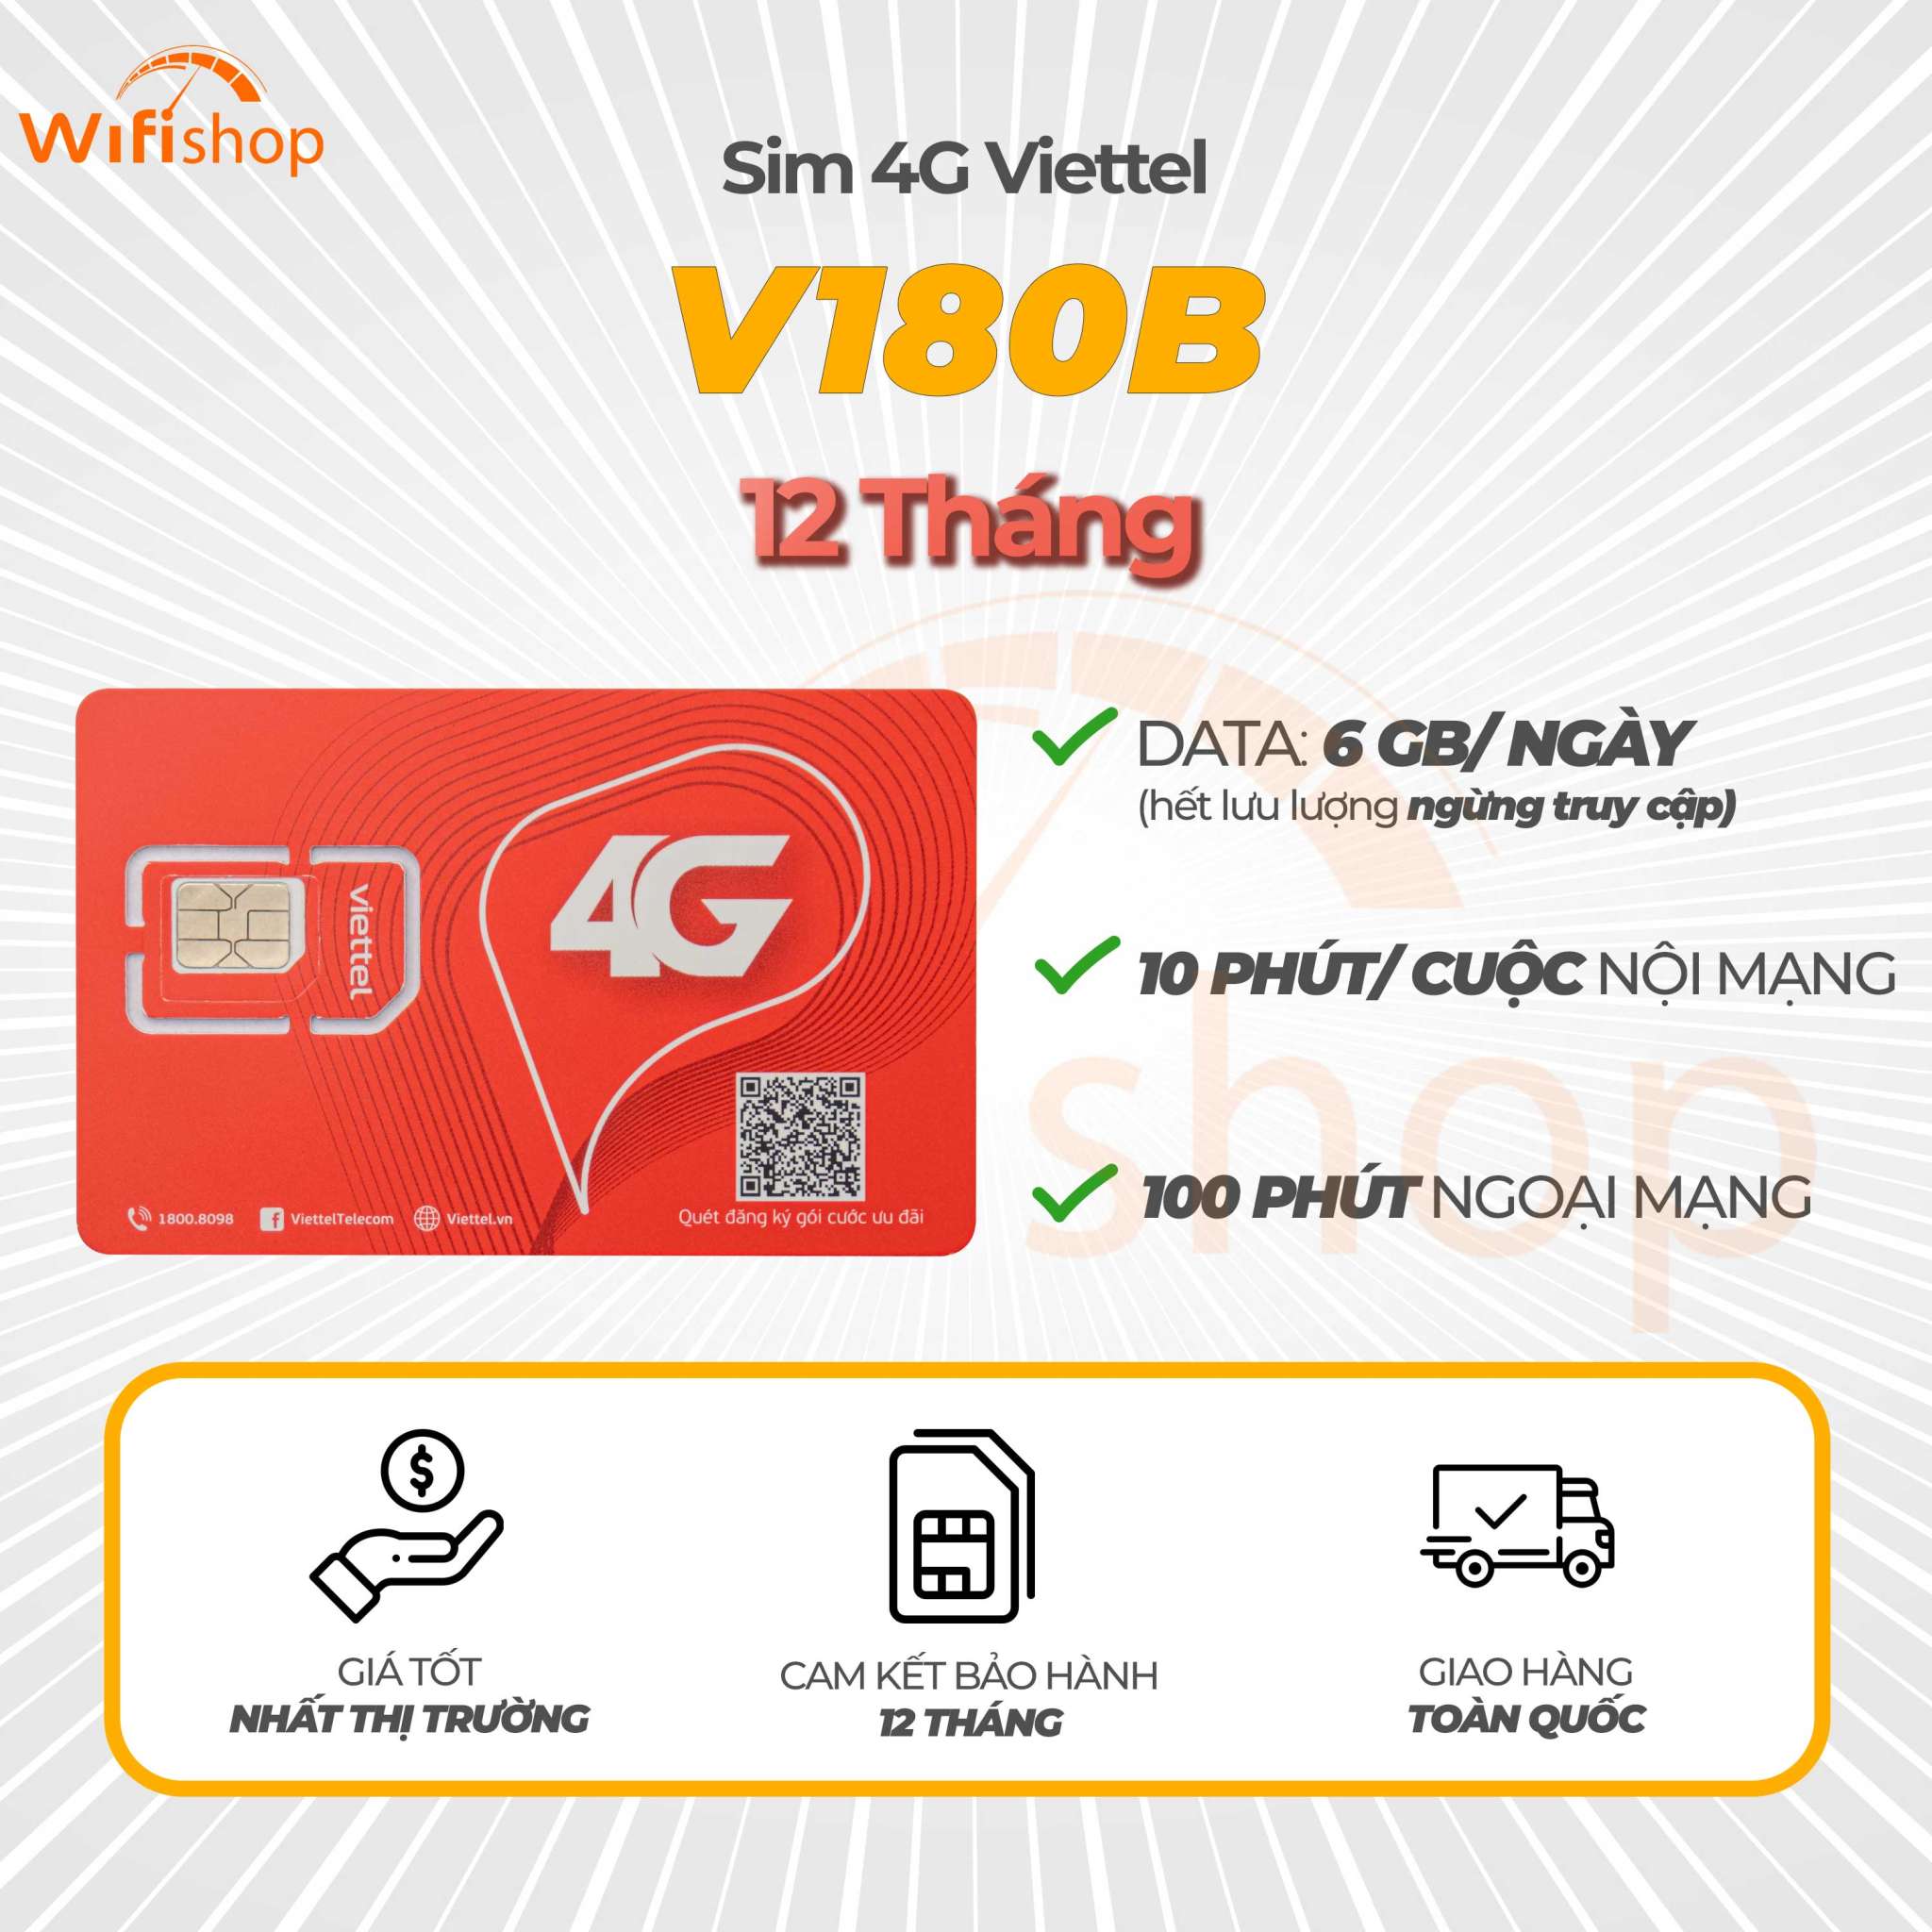 Sim Viettel V180B 6GB/Ngày (180GB/Tháng), Miễn phí nội mạng, 100 phút ngoại mạng, Trọn gói 12 tháng